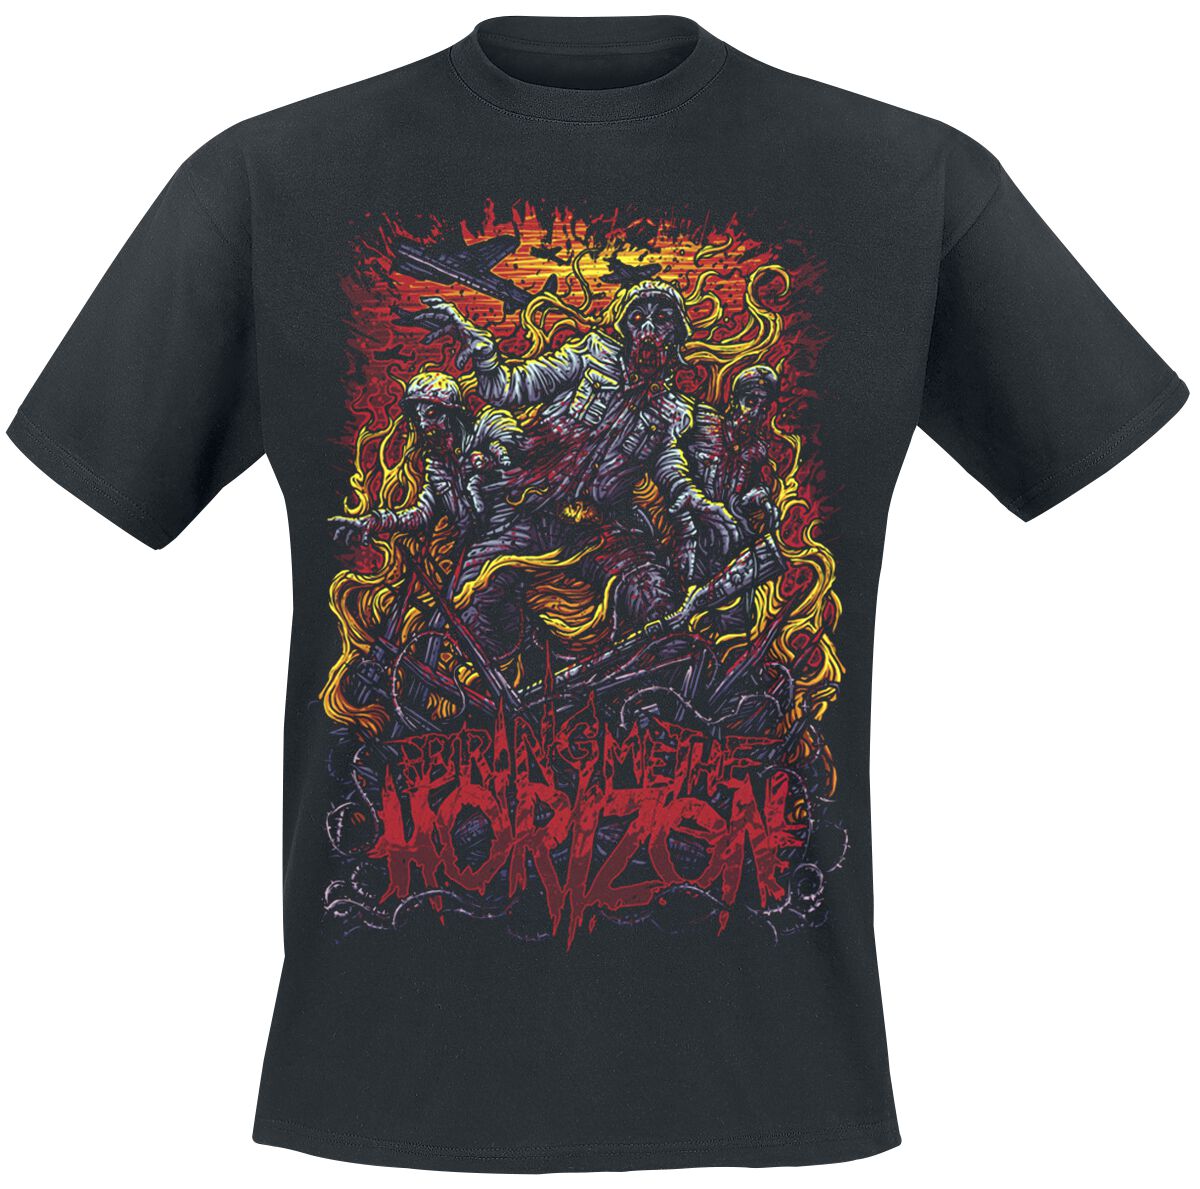 Bring Me The Horizon T-Shirt - Zombie Army - S bis XXL - für Männer - Größe XXL - schwarz  - Lizenziertes Merchandise!